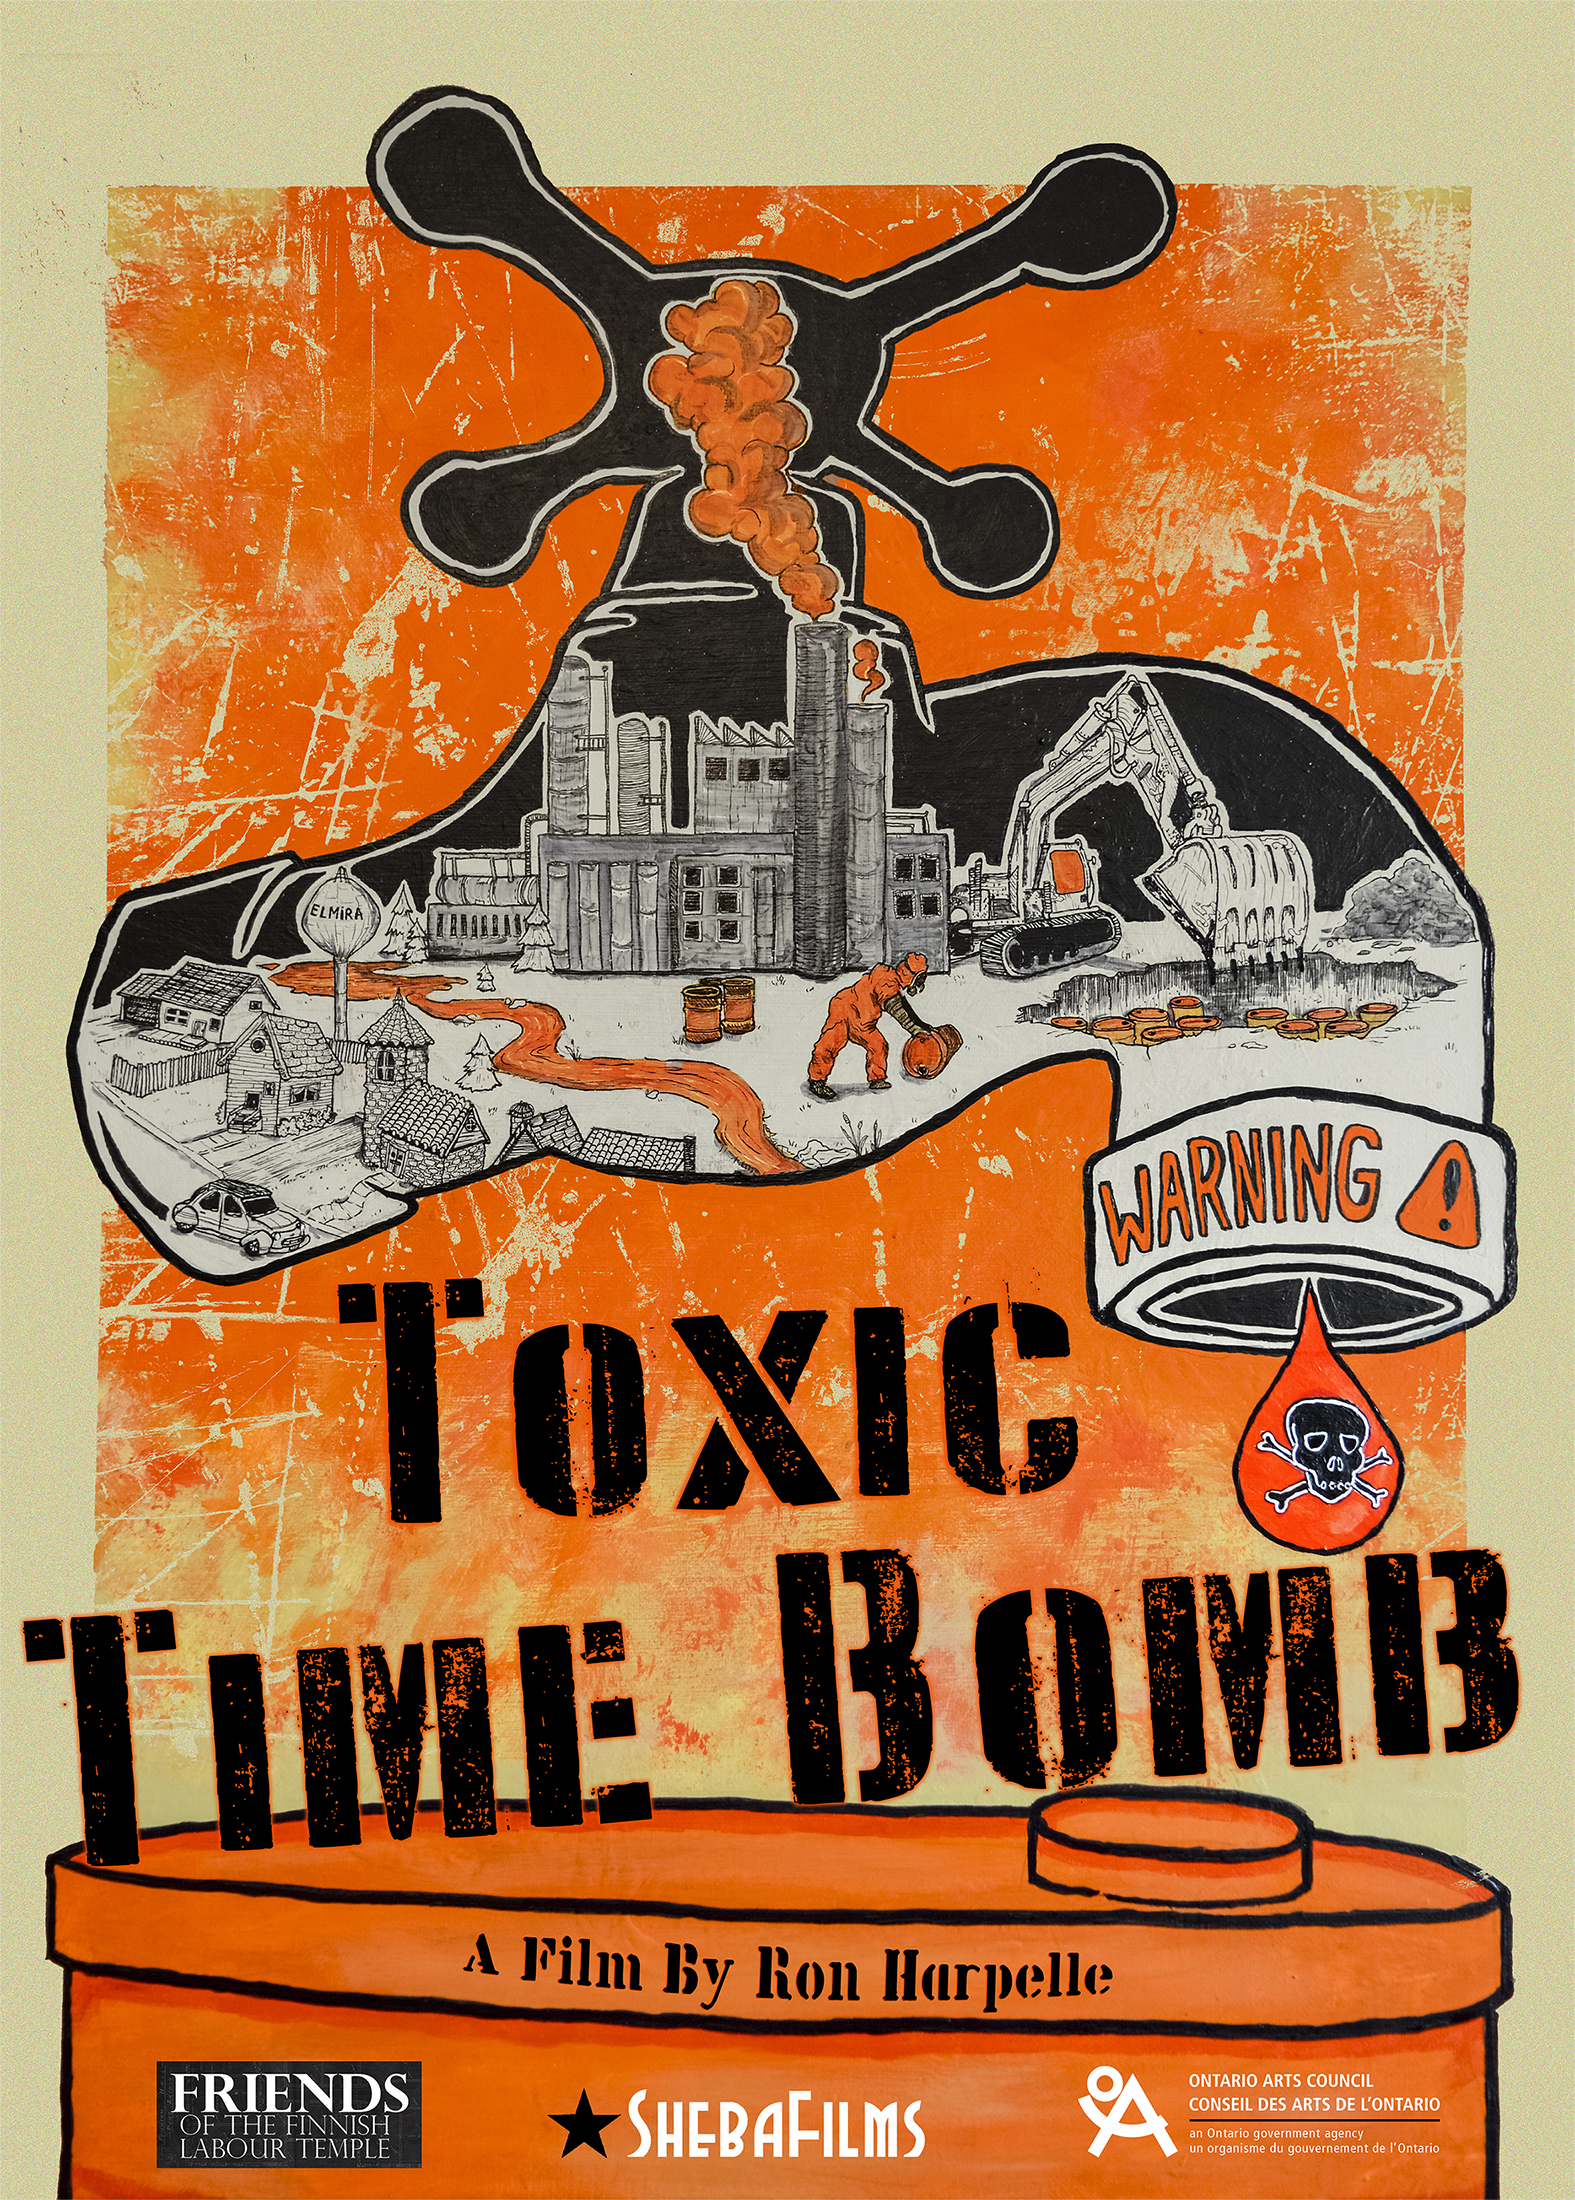 Toxic bomb 